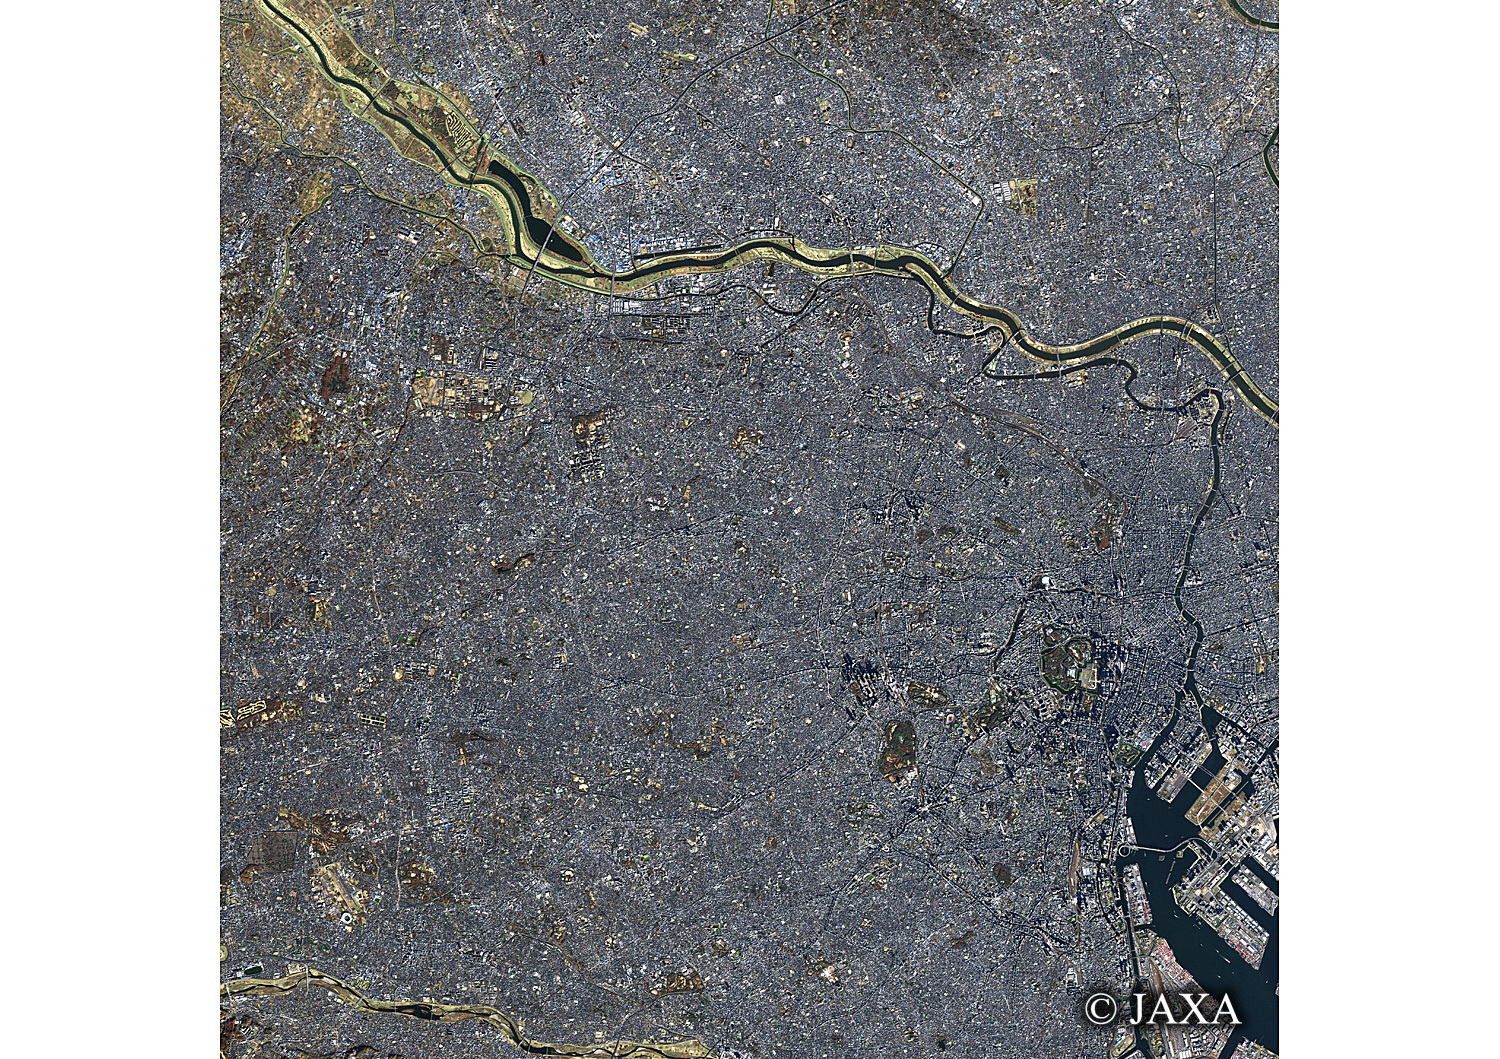 だいちから見た日本の都市 板橋区と周辺地域:衛星画像